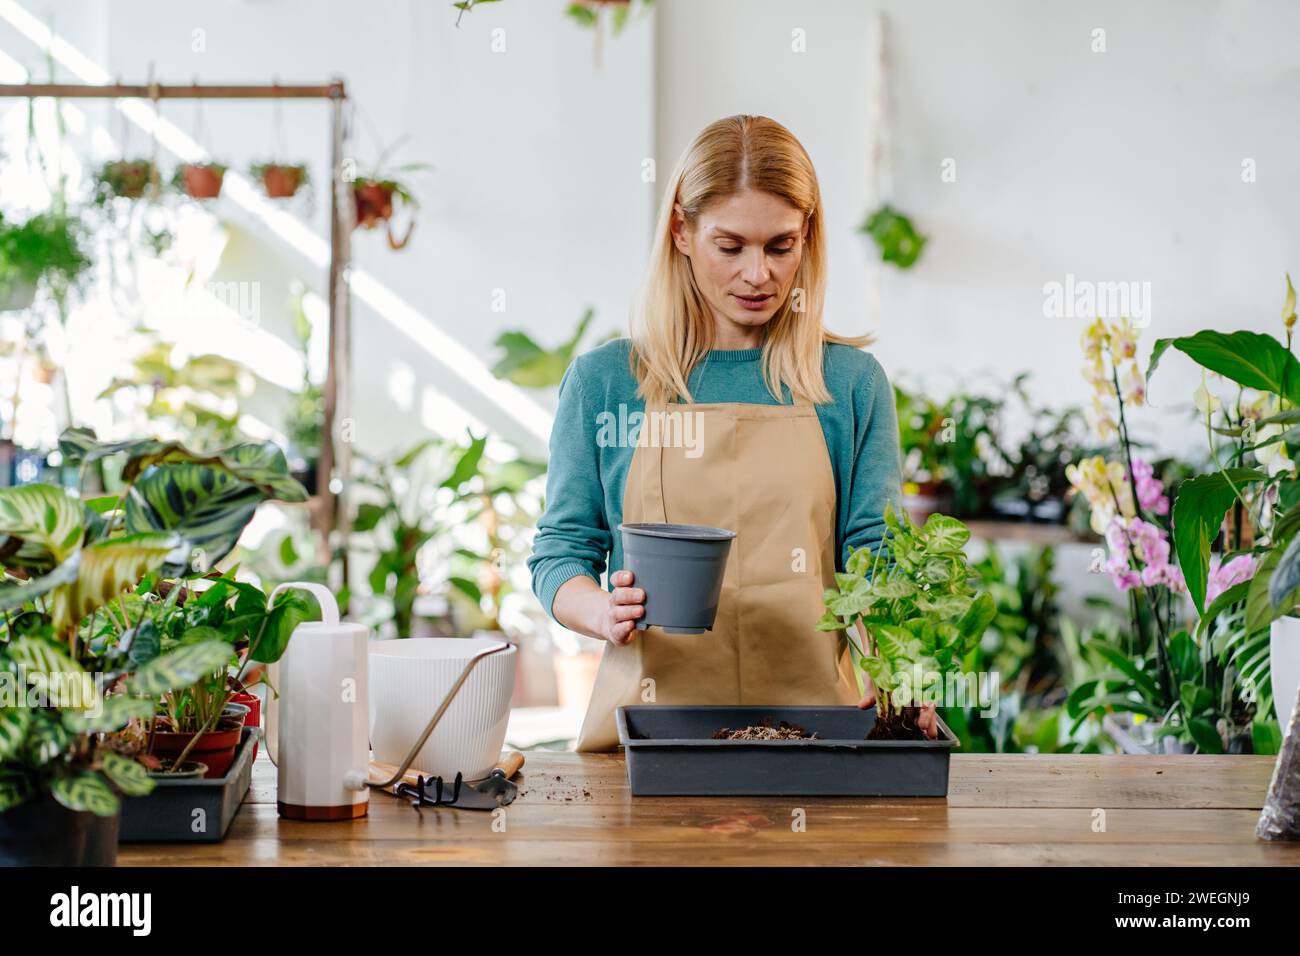 Blonde Frau mittleren Alters, die in ihrem Plant Store arbeitet, umgeben von einer Vielzahl von Farbtönen, die sich aufmerksam um verschiedene Pflanzen kümmert und ein lebendiges, schönes Leben schafft Stockfoto